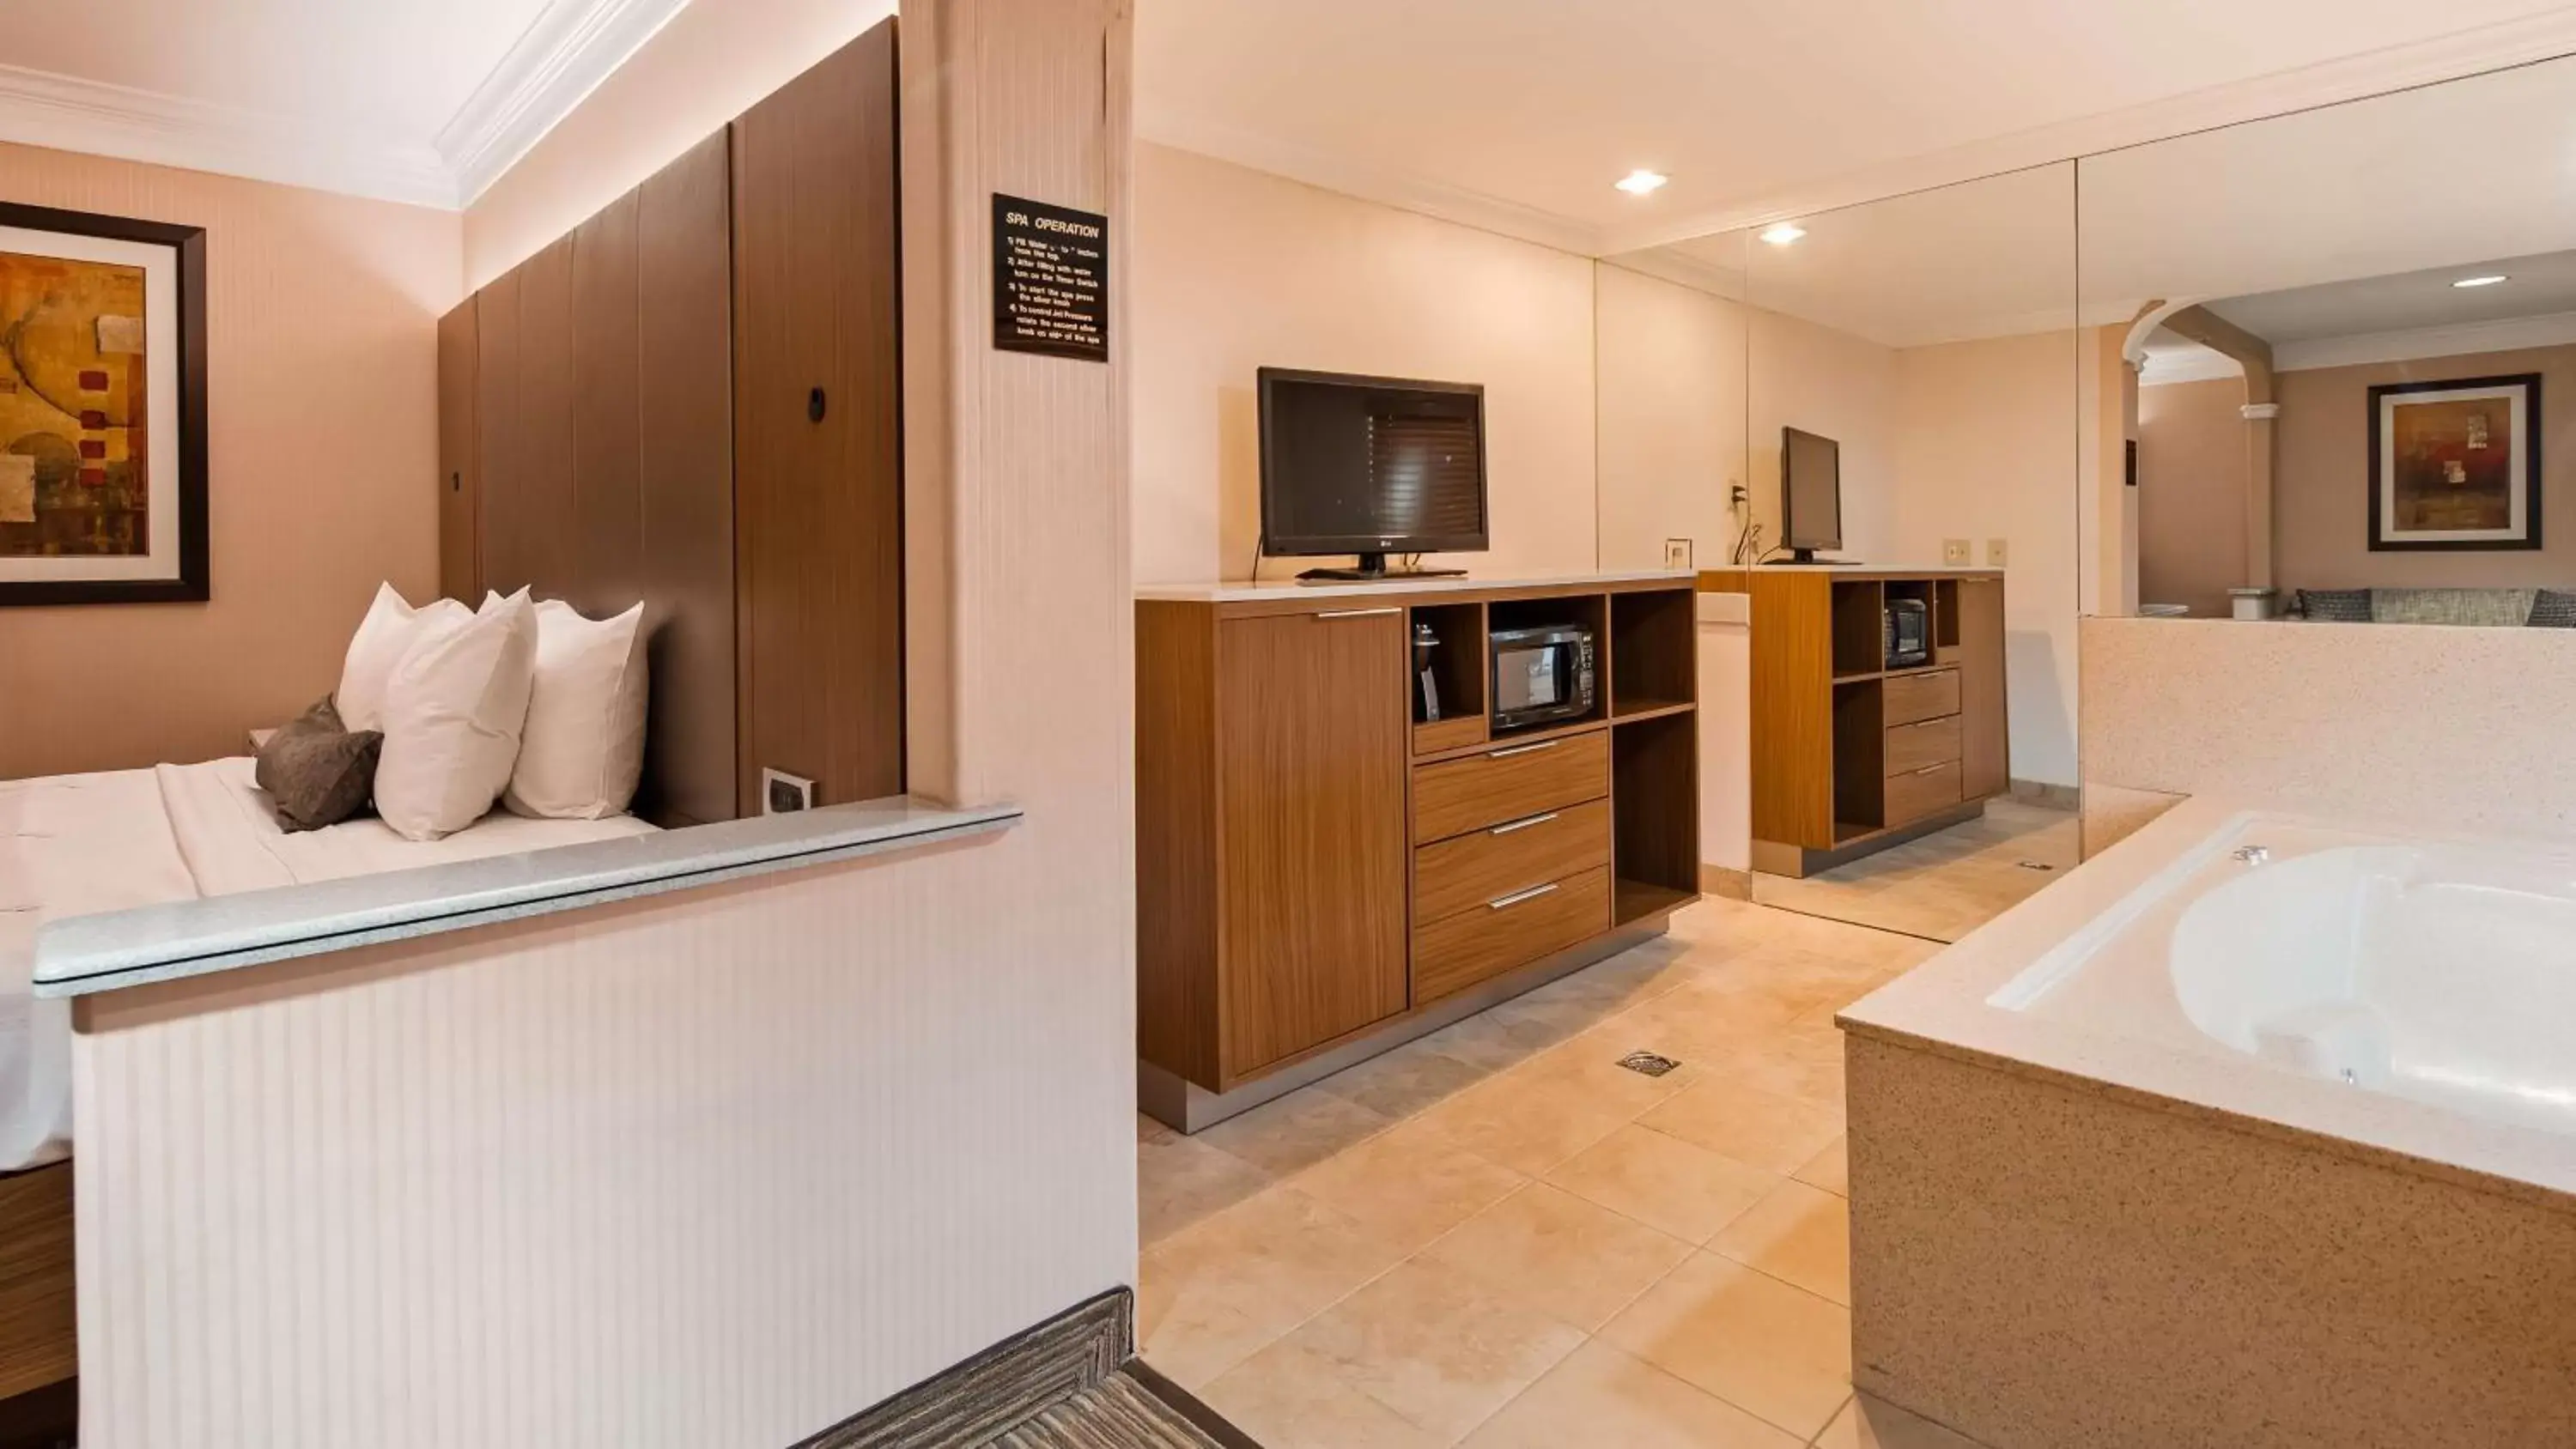 Bedroom, Bathroom in Best Western Plus Suites Hotel - Los Angeles LAX Airport